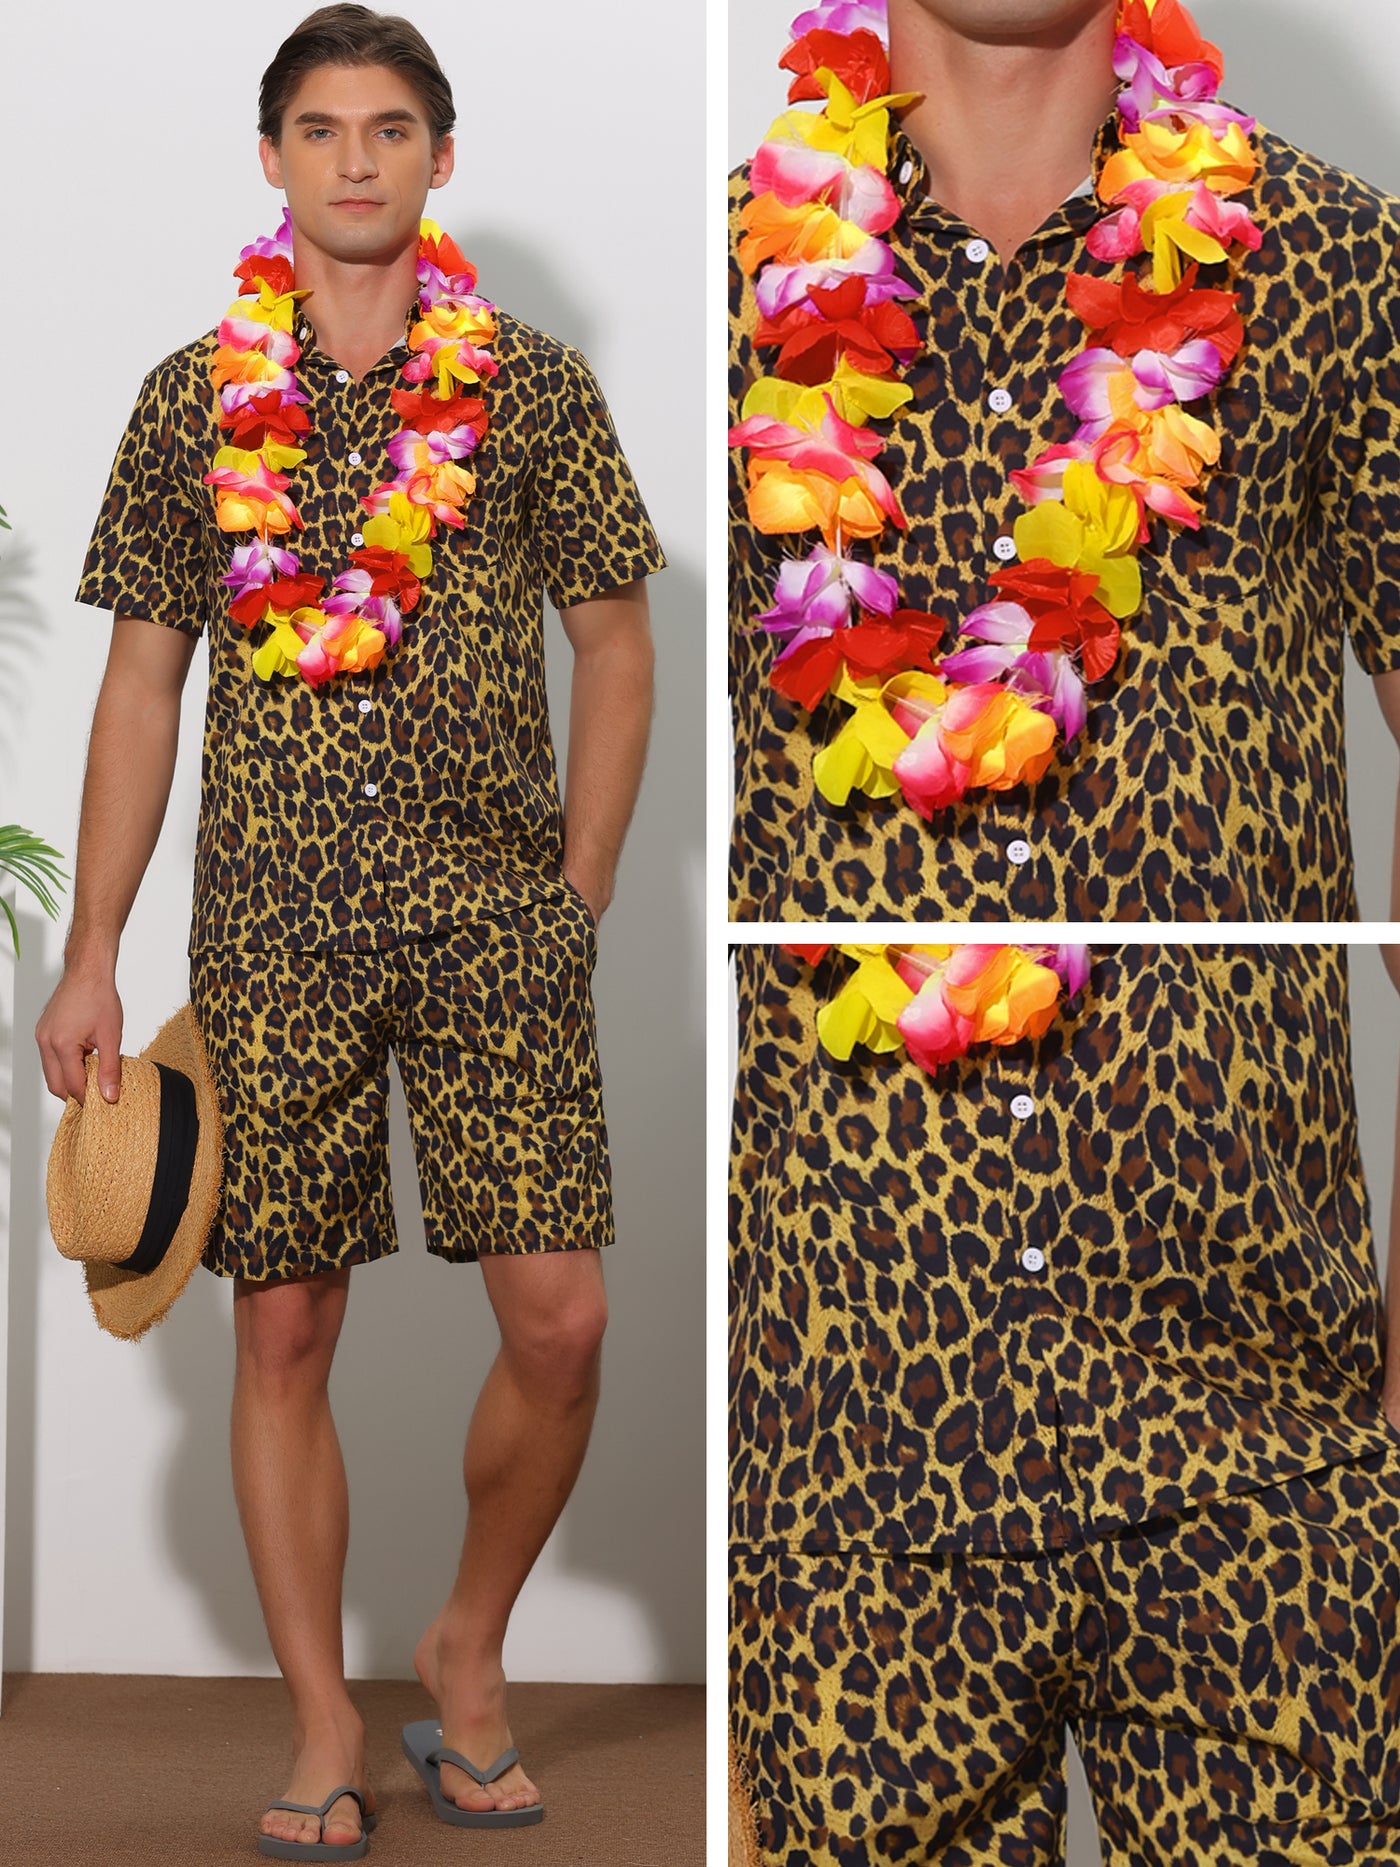 Bublédon Animal Printed Hawaiian Summer 2 Pieces Pattern Shirts and Shorts Sets